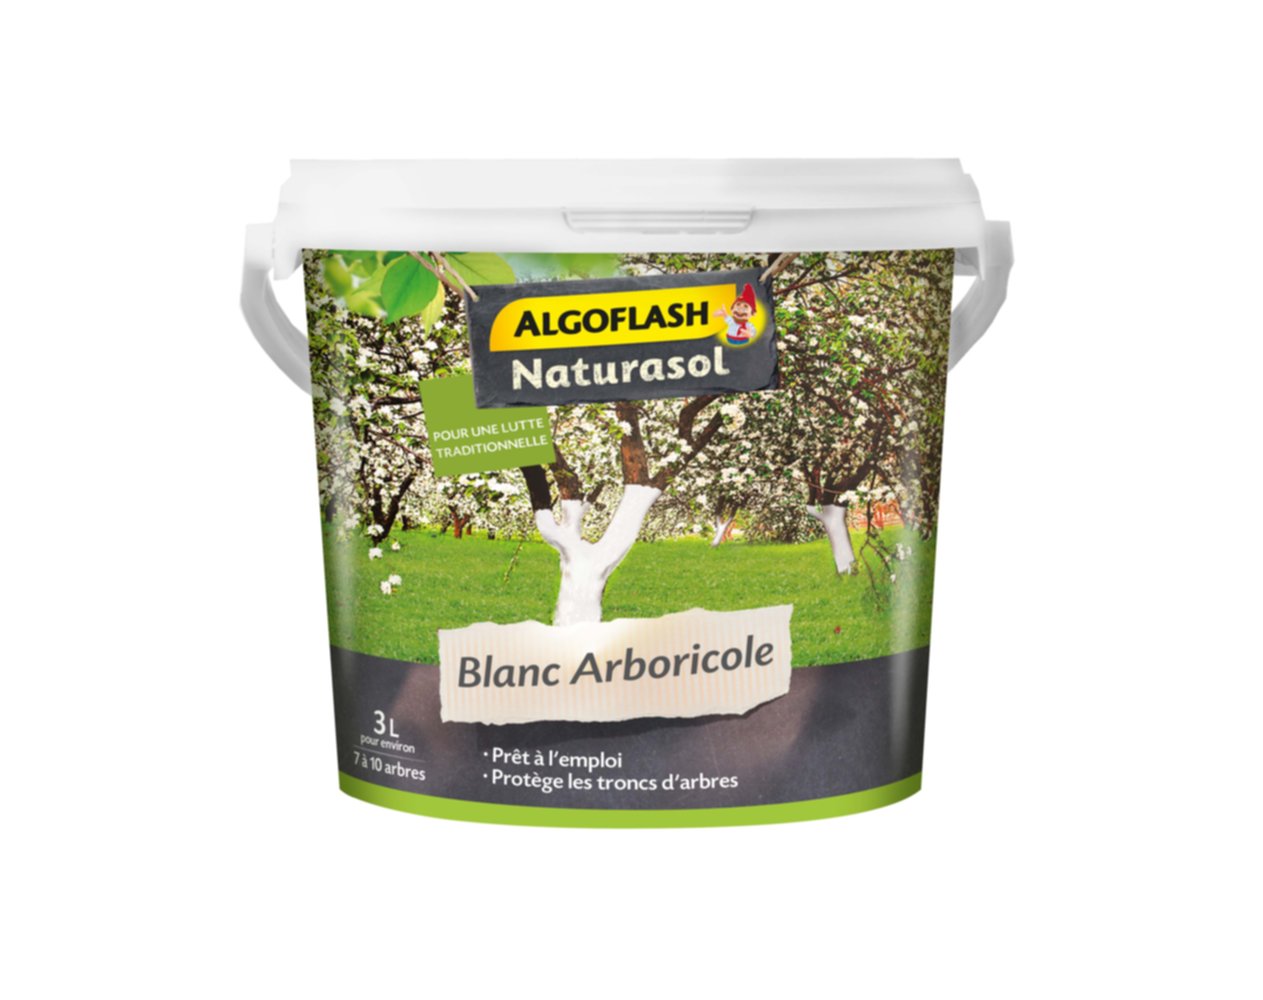 Blanc Arboricole prêt à l'emploi 3L - ALGOFLASH